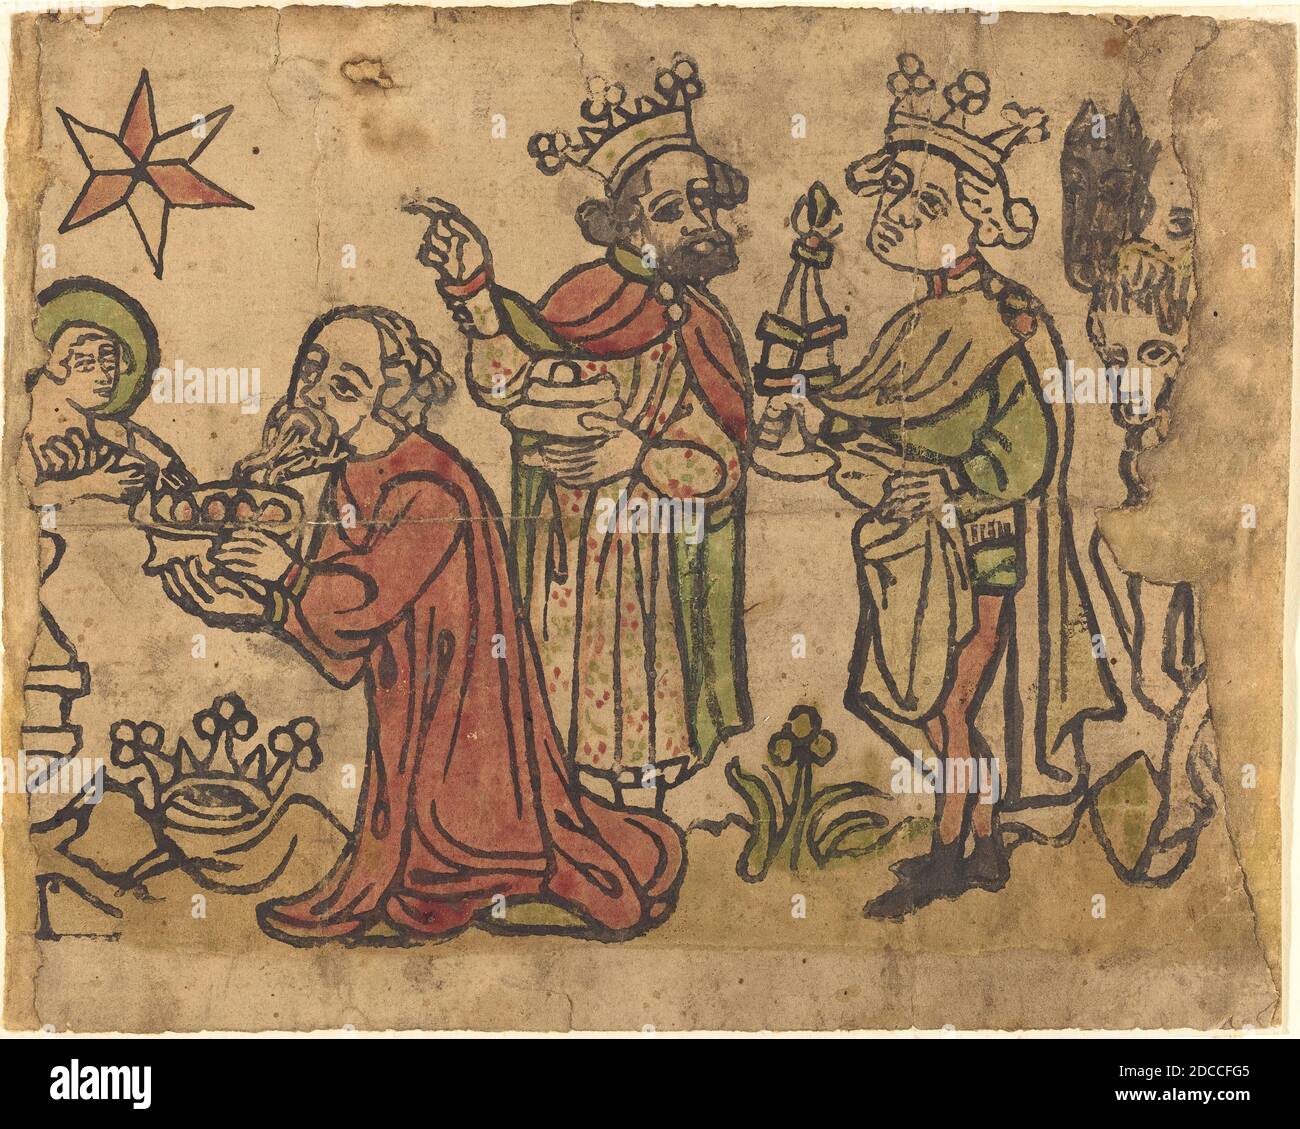 Alemán siglo XV, (artista), la Adoración de los Magos, c. 1400/1430, madera cortada, coloreada a mano en rojo, verde y amarillo Foto de stock